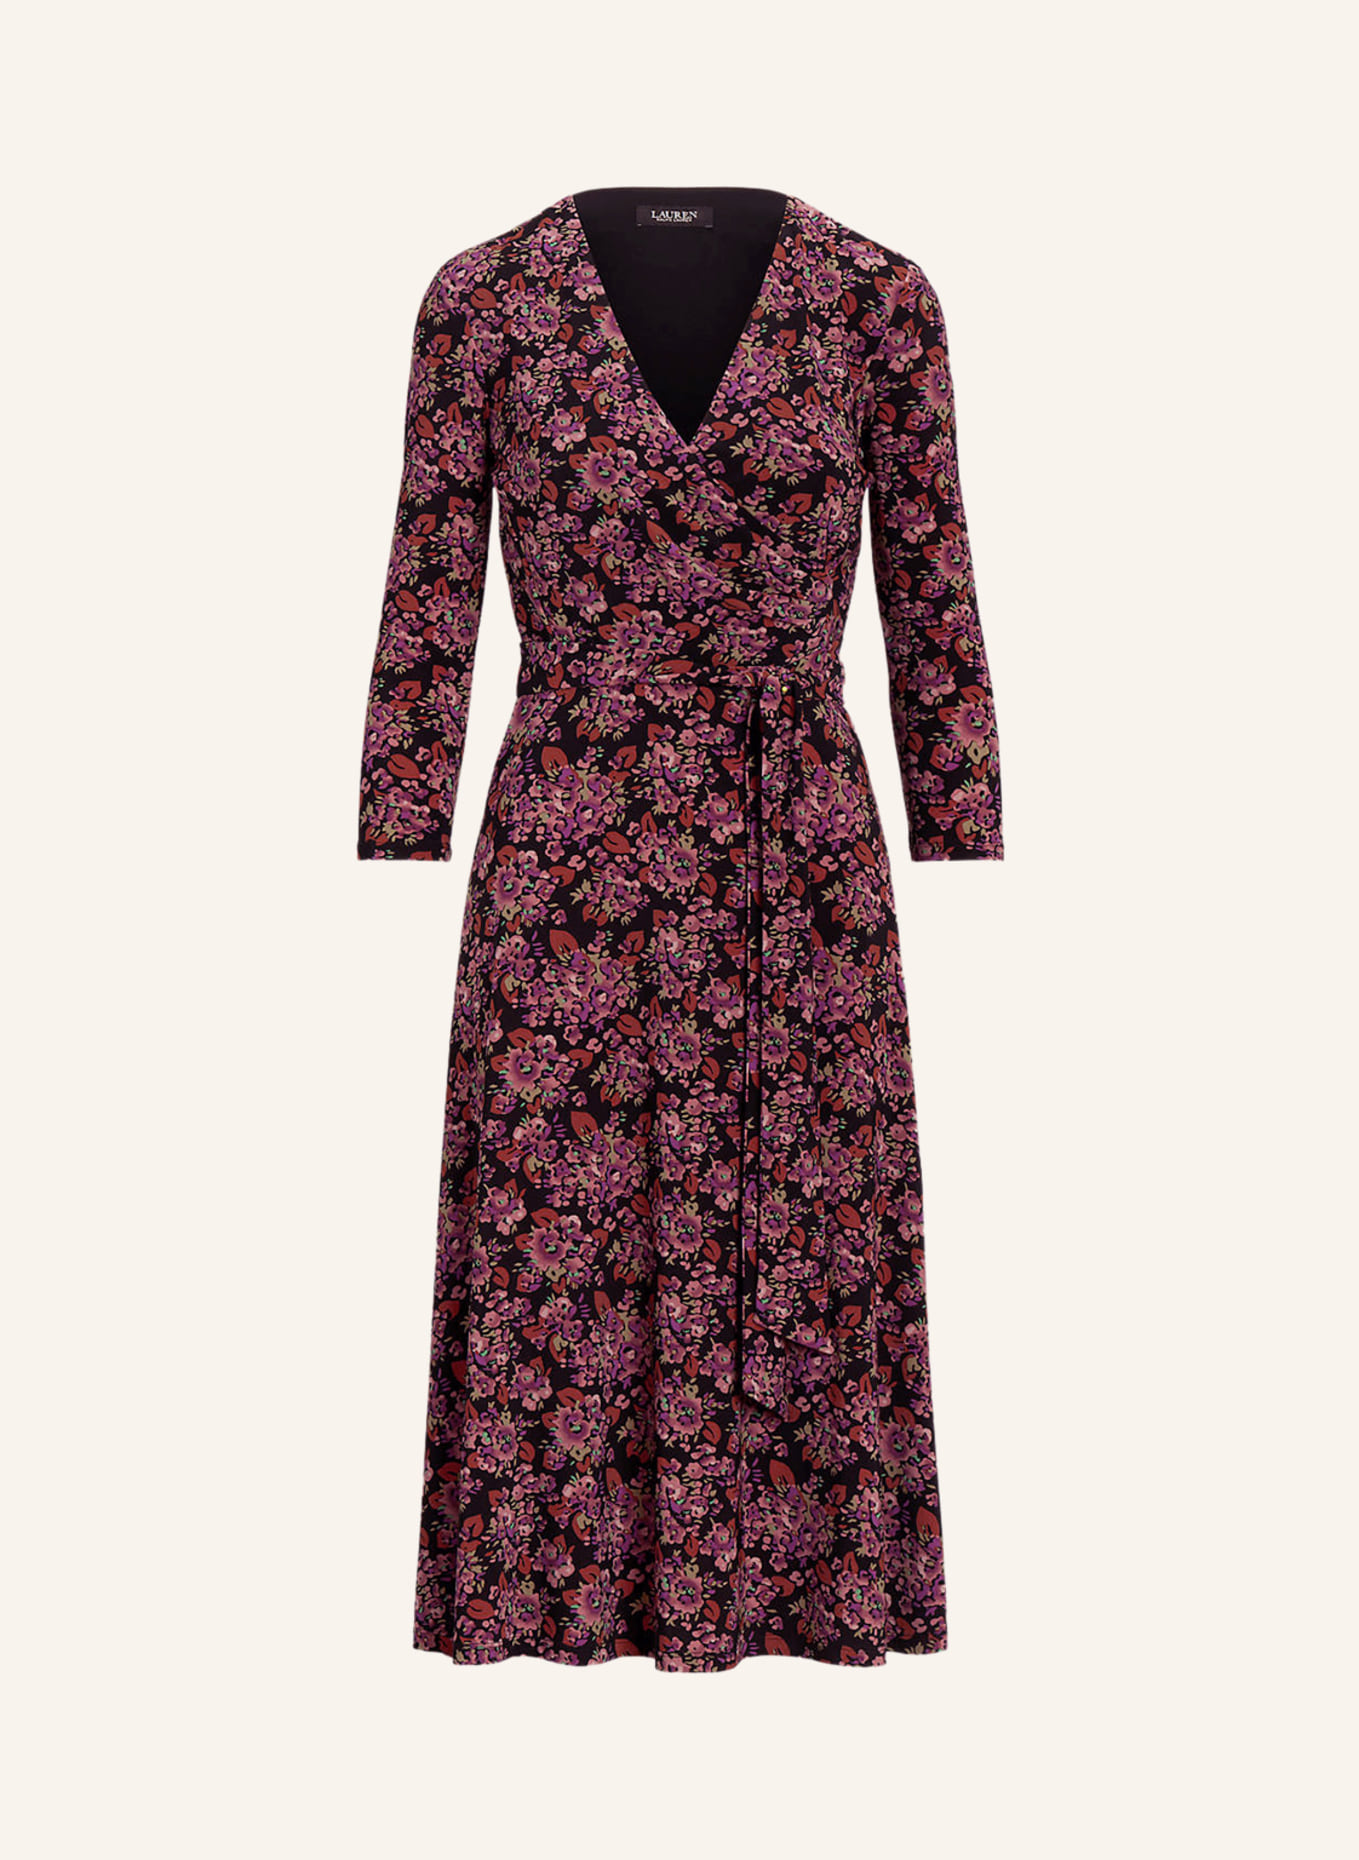 LAUREN RALPH LAUREN Jersey dress with 3/4 sleeves and wrap look, Color: BLACK/ DARK ORANGE/ LIGHT PURPLE (Image 1)